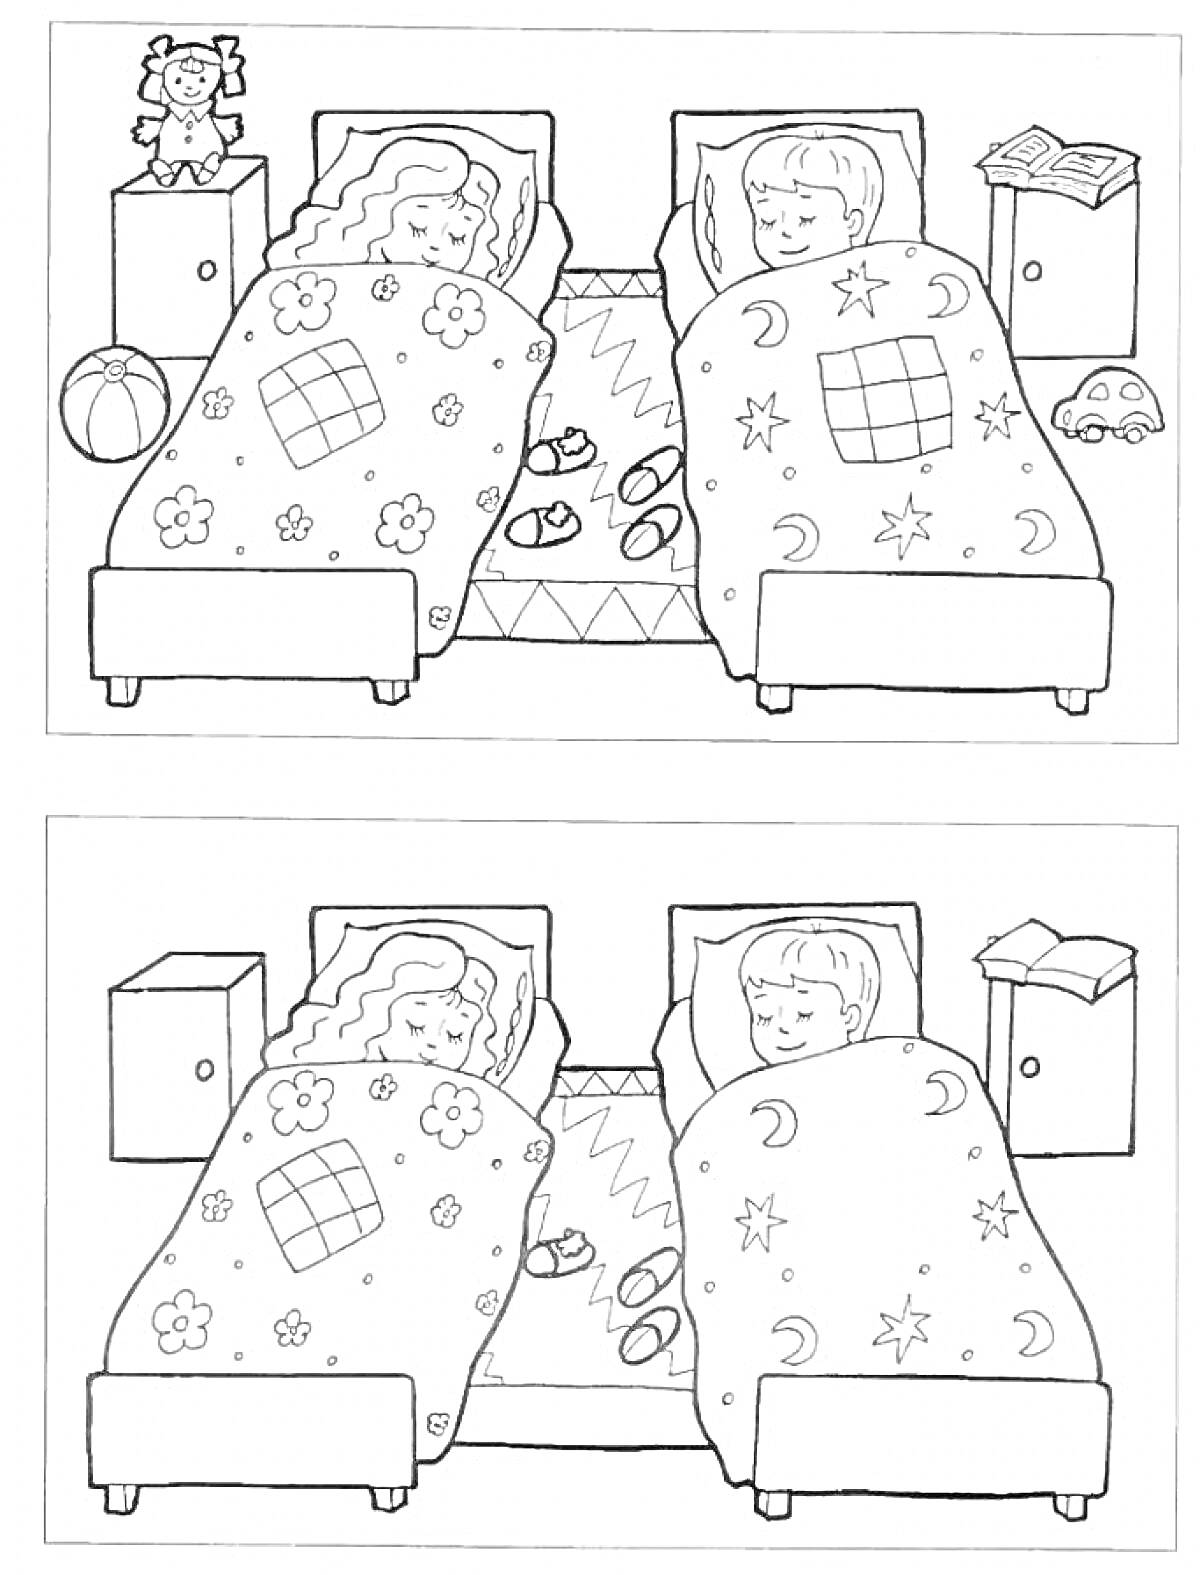 Найди отличия между двумя рисунками с двумя спящими детьми в кроватях с одеялами, игрушками и предметами мебели вокруг.